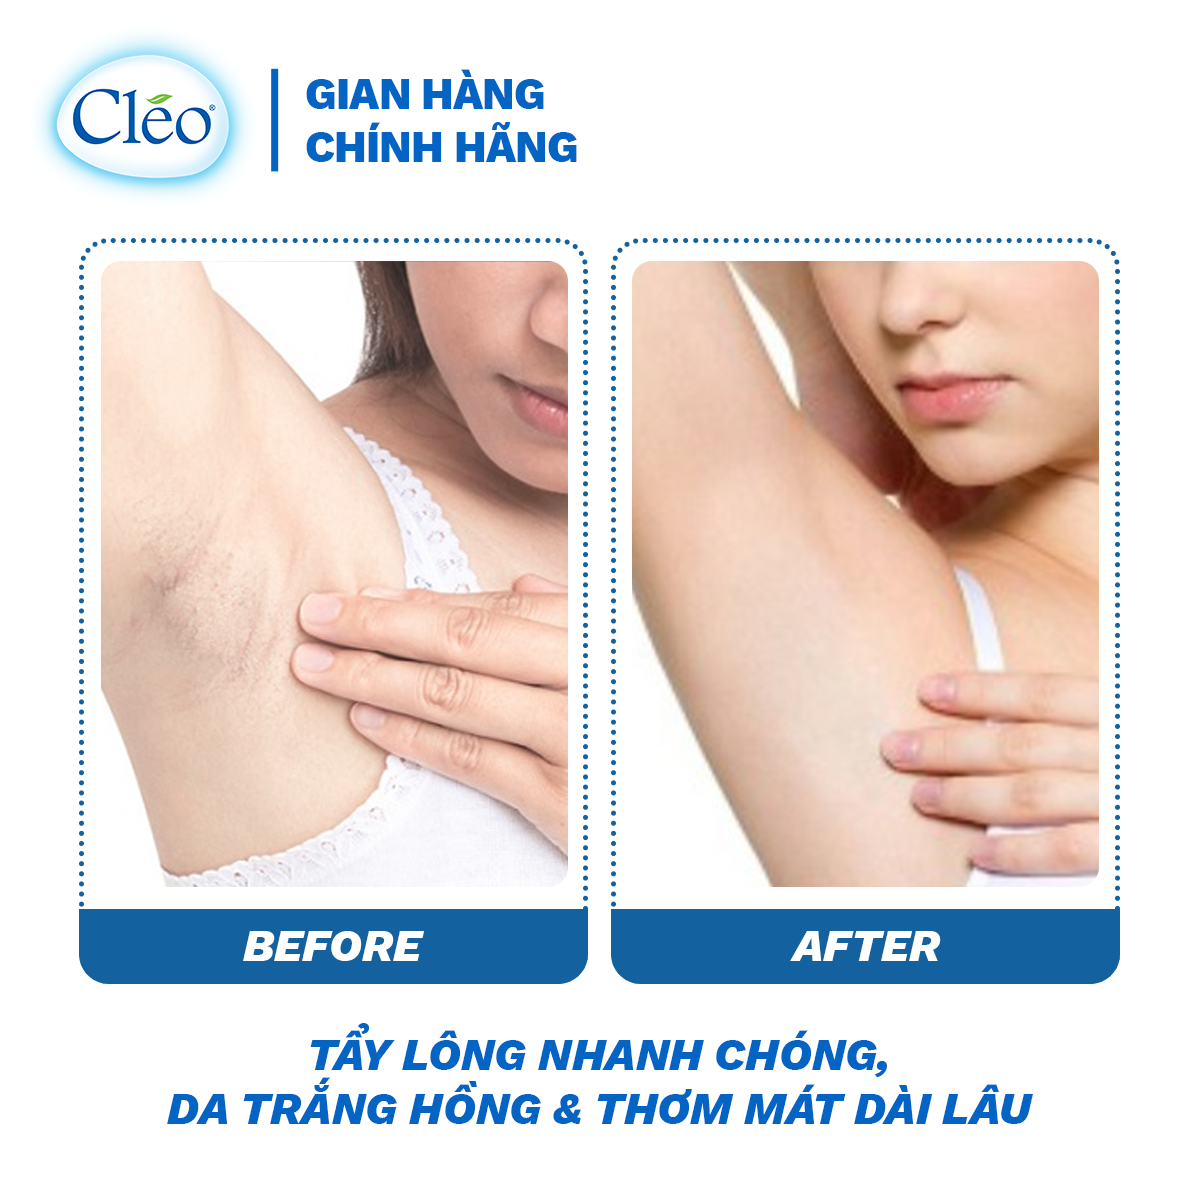 Hình ảnh Kem Tẩy Lông Chiết Xuất Bơ Cleo Dành Cho Da Thường 25g, an toàn, không đau và đạt hiệu quả nhanh chóng